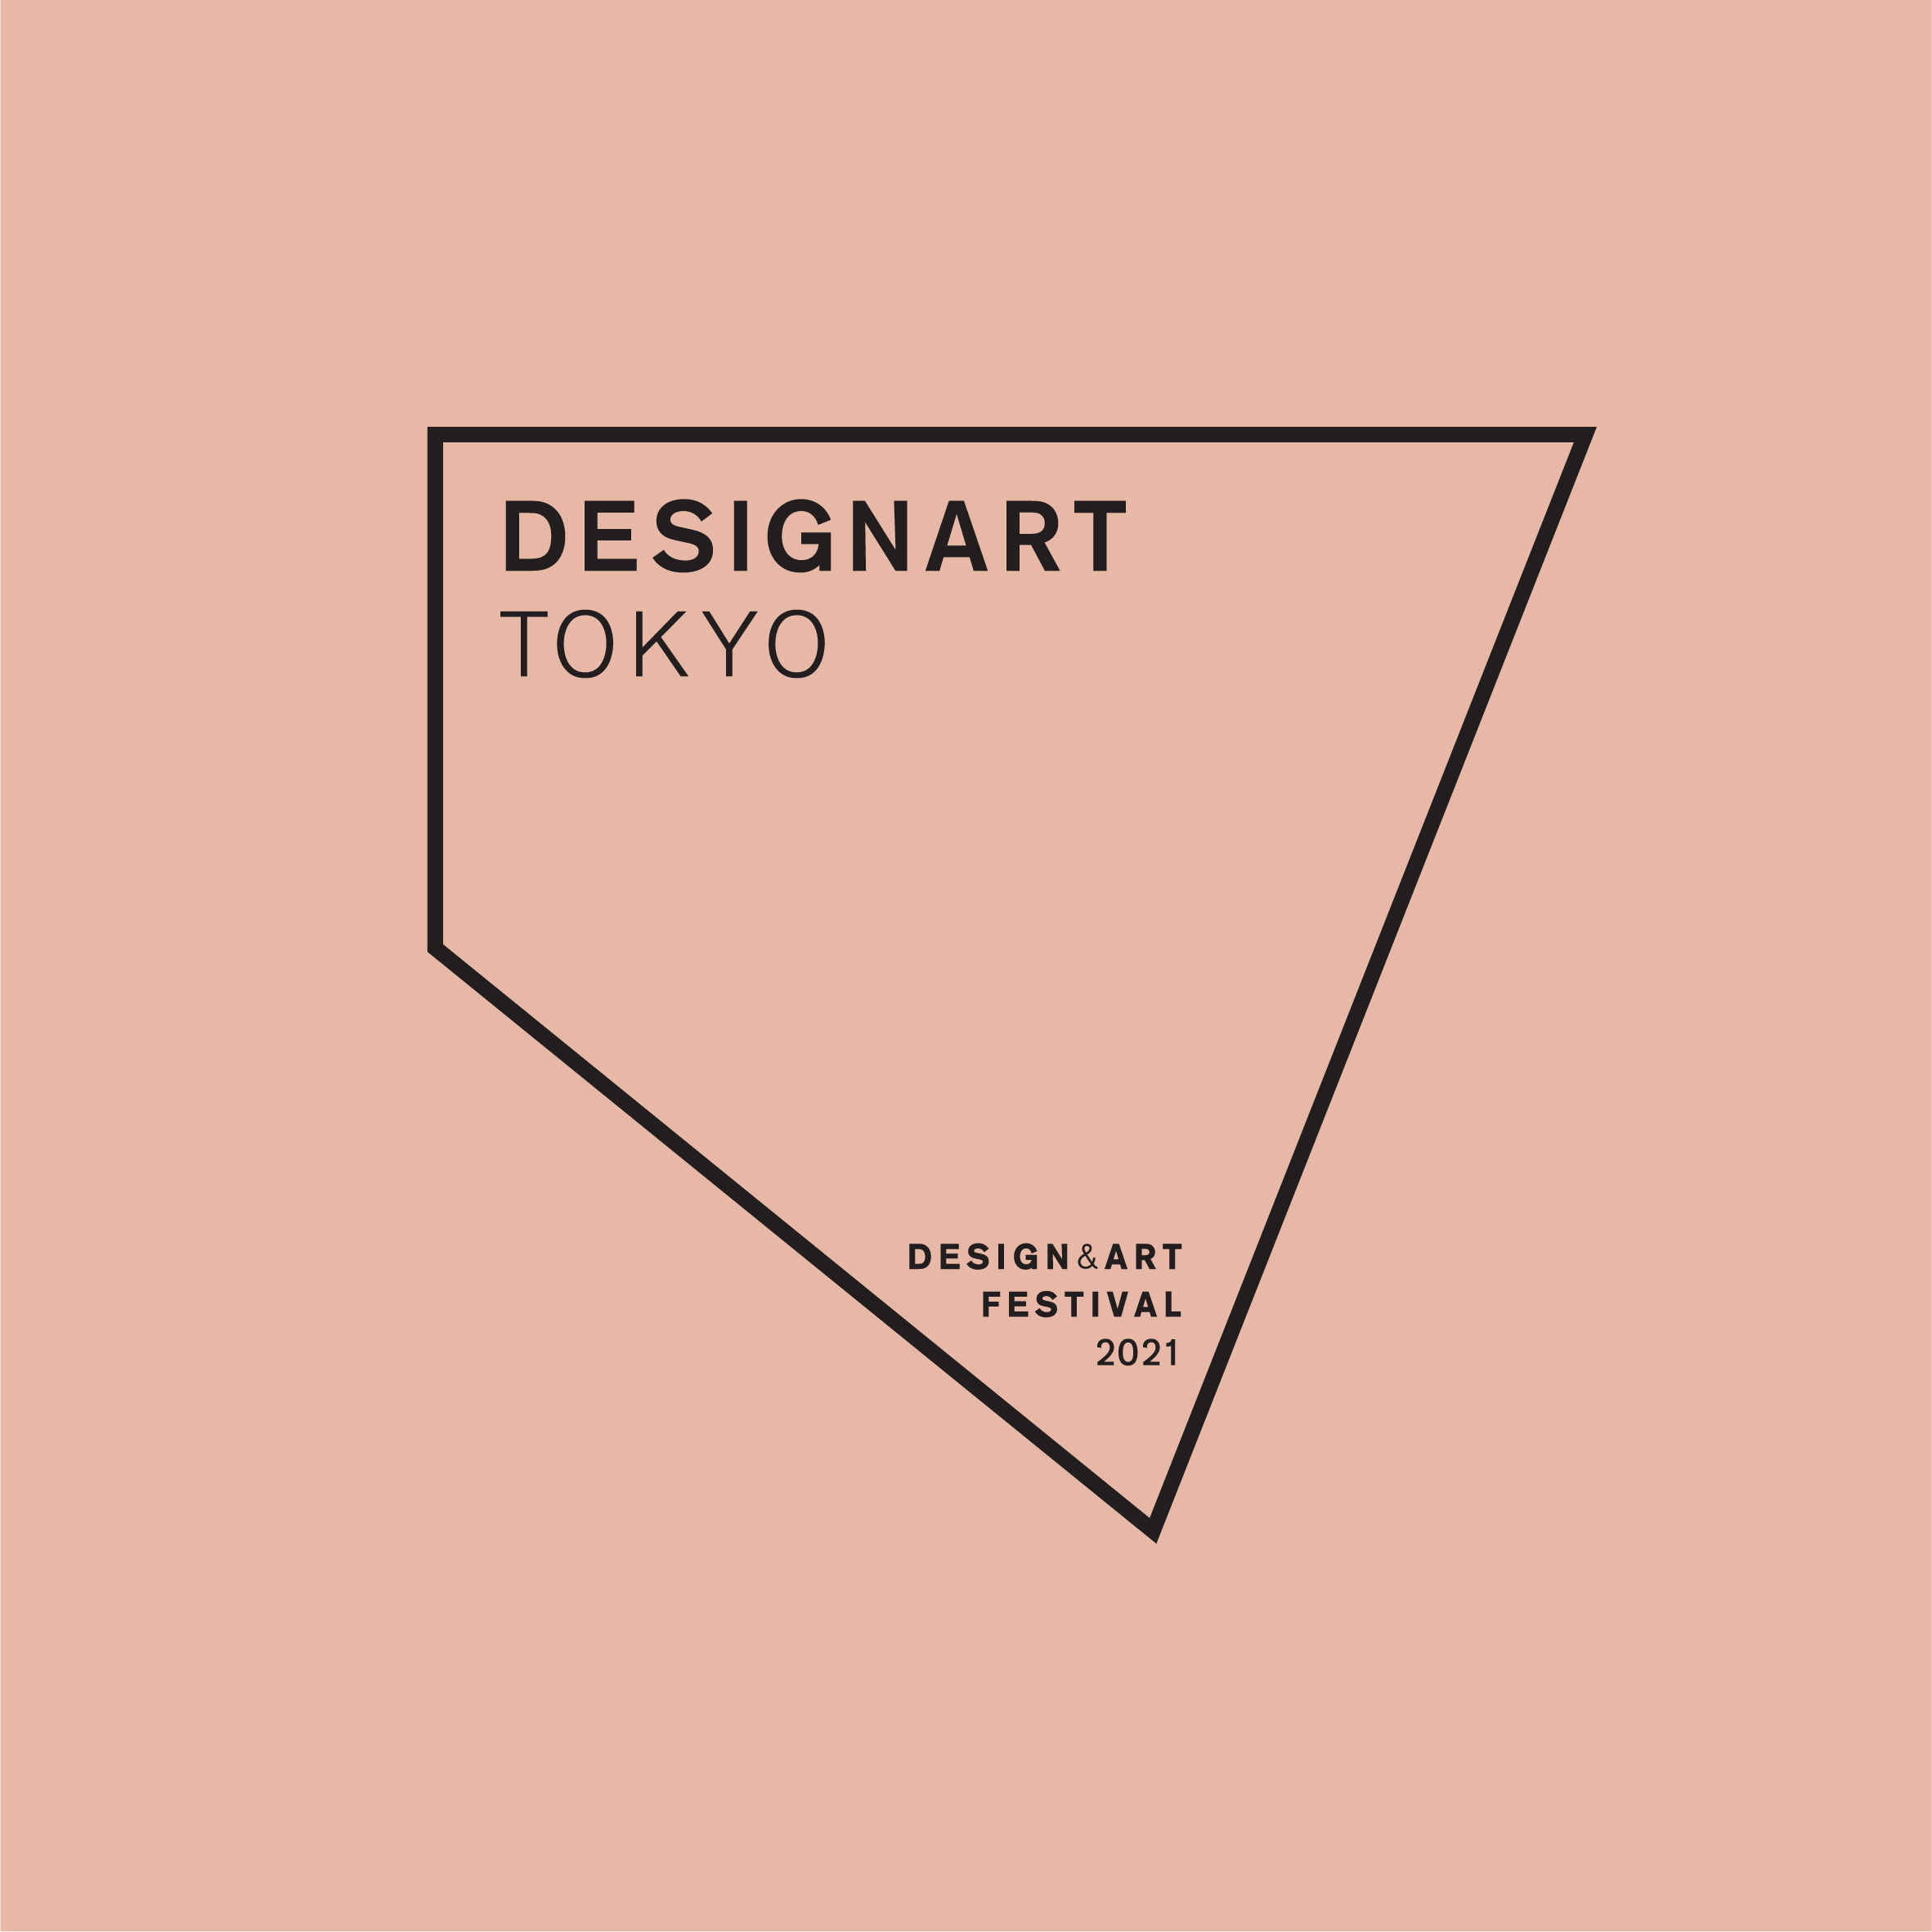 毎年秋に行われるデザイン&アートフェスティバル「DESIGNART TOKYO 2021」の開催が決定！ テーマは「CHANCE! ～かつてないチャンス」